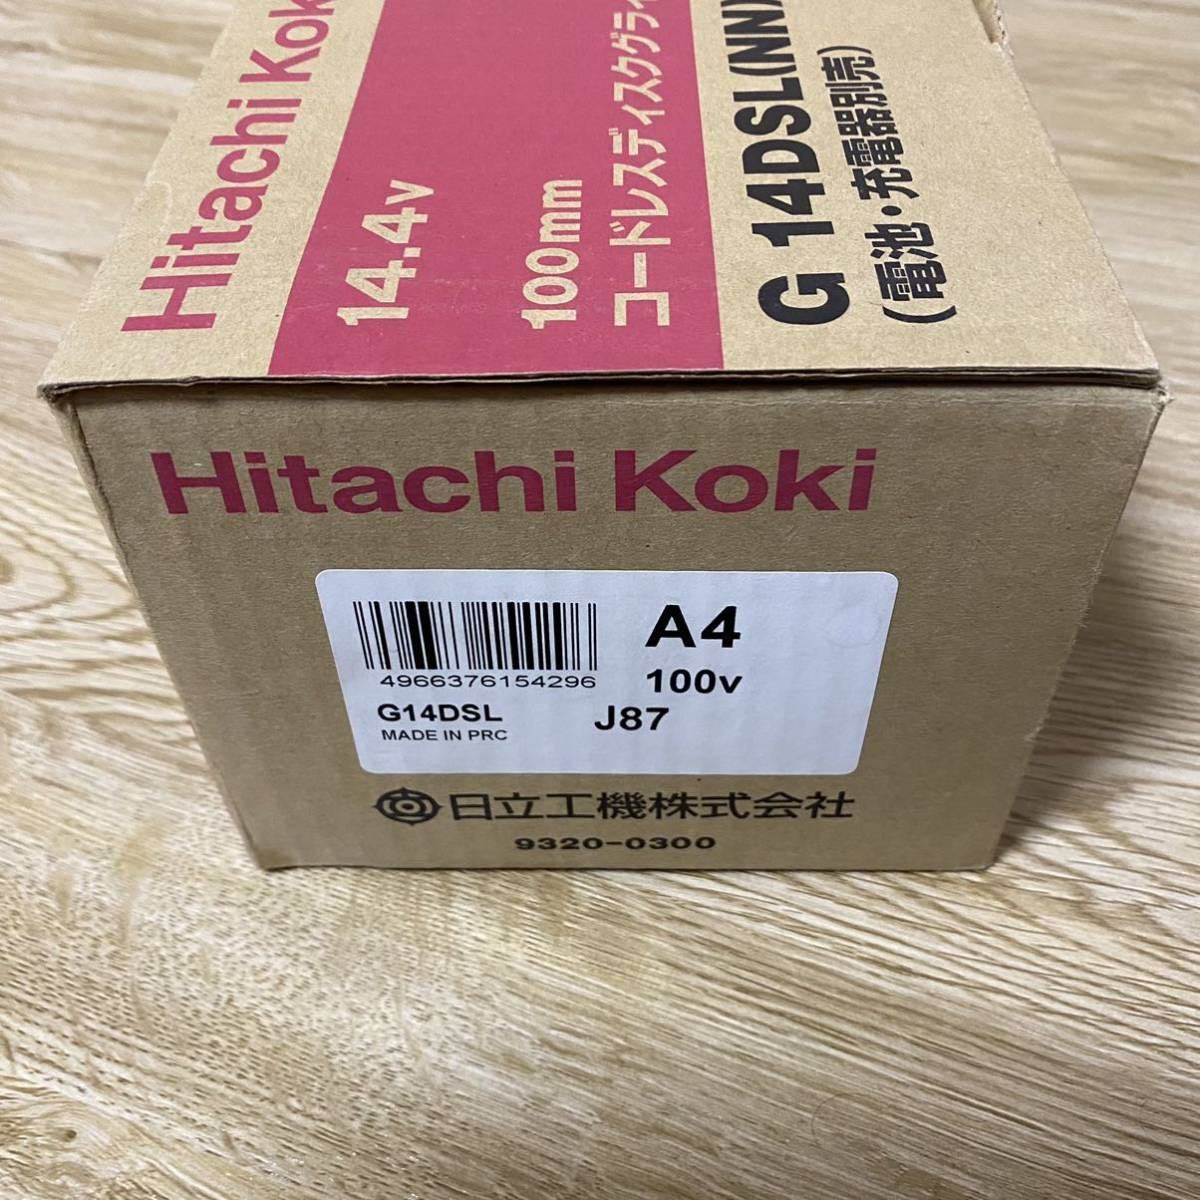 【未使用】 Hitachi Koki 14.4V 100mm コードレスディスクグラインダ G 14DSL_画像5